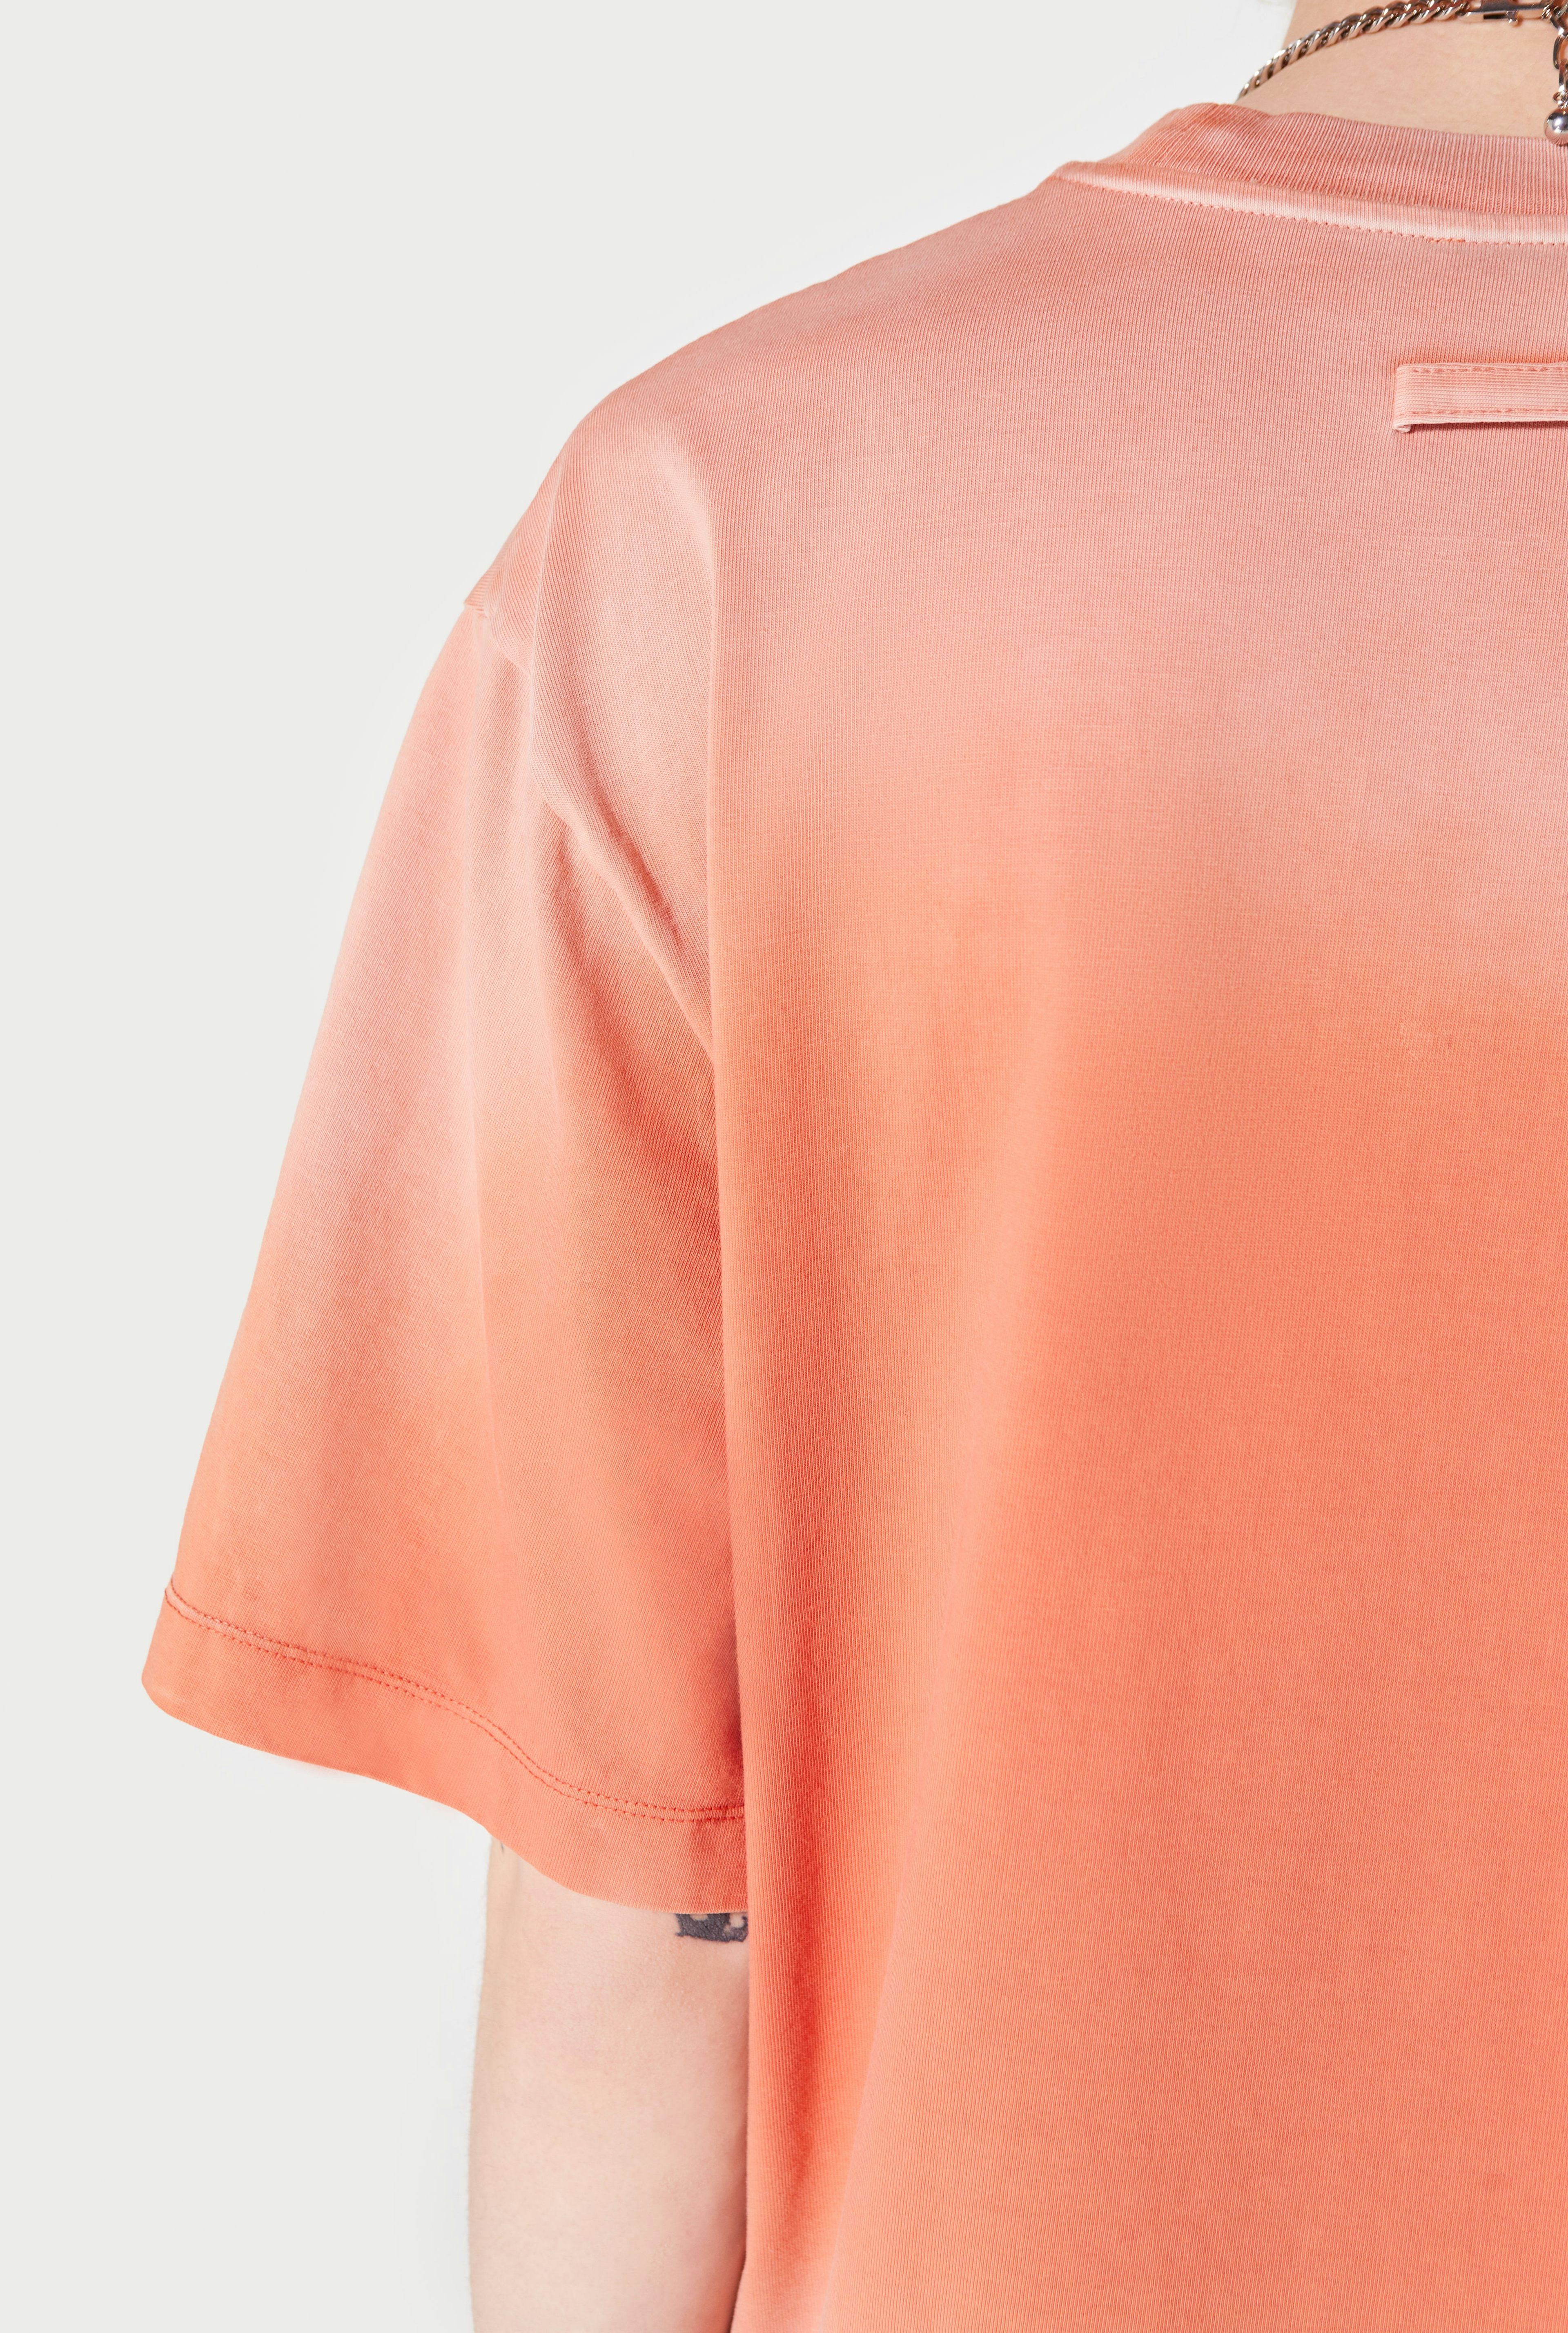 The Orange Évidemment T-Shirt